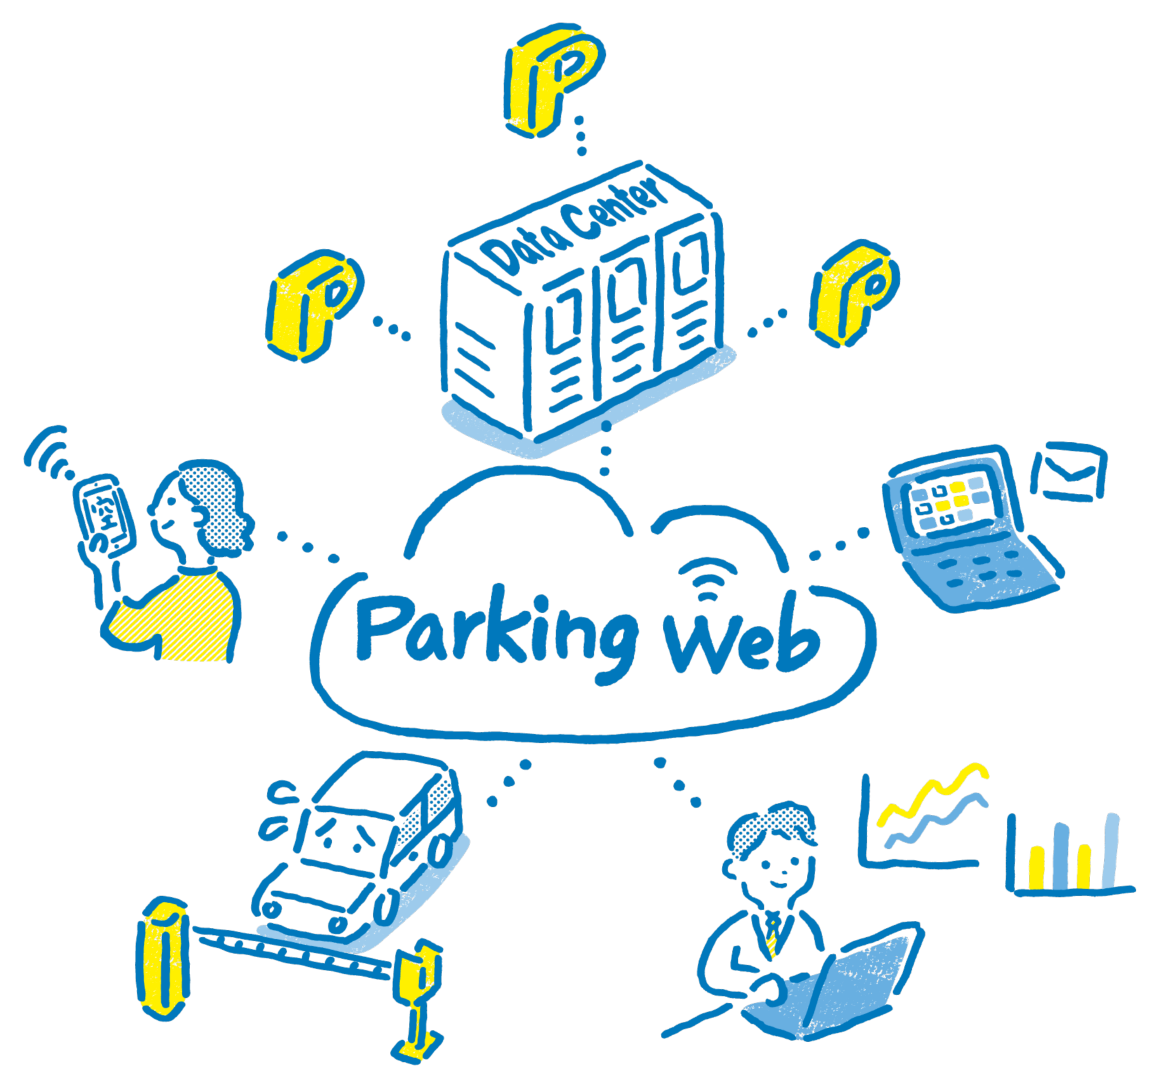 Parking Web